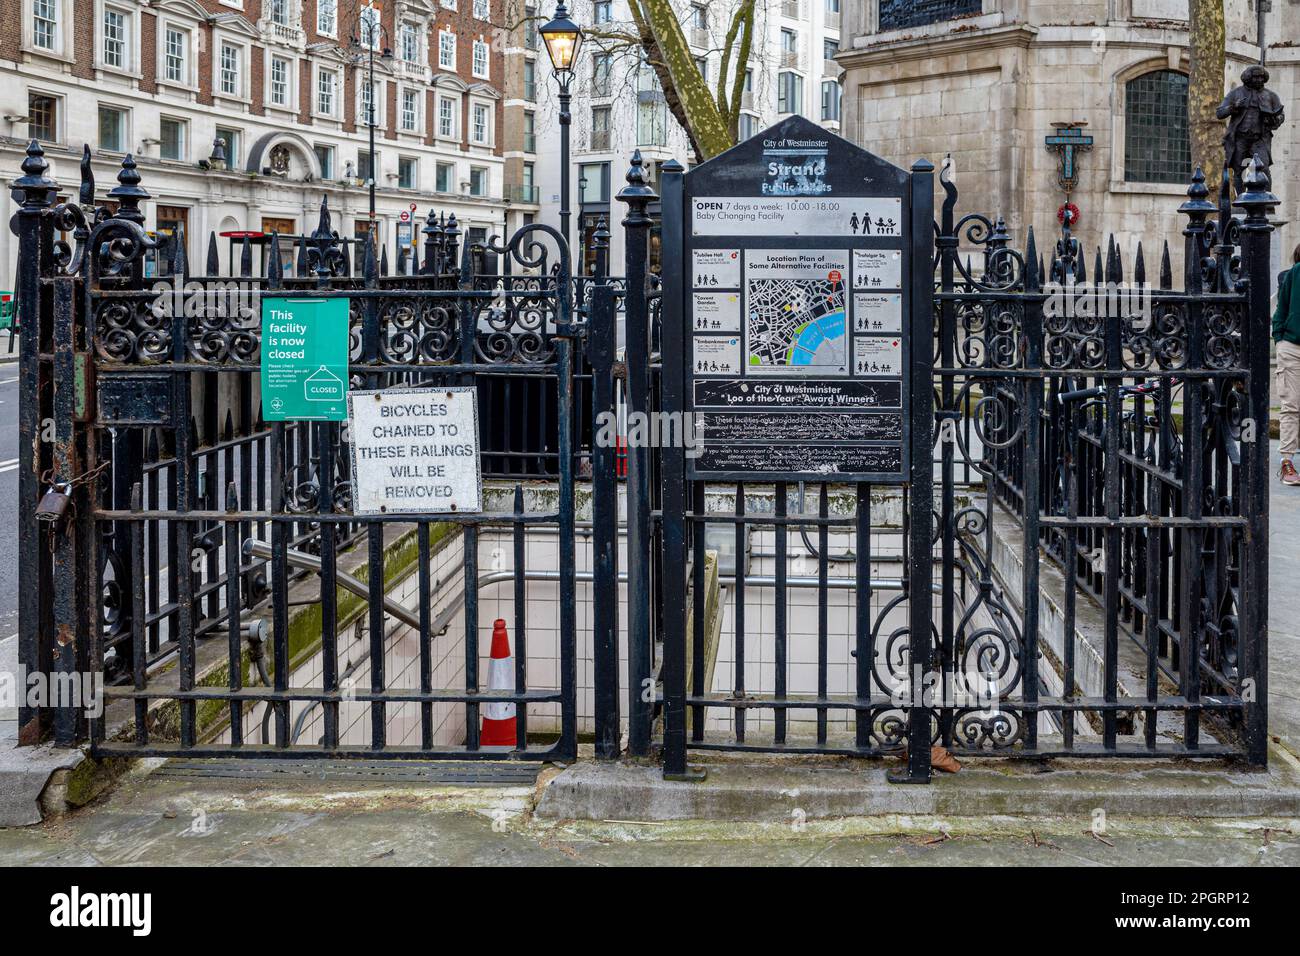 Cerrado Servicios públicos en el centro de Londres en Fleet Street / The Strand. Desapareciendo los baños públicos de Londres. Baño público en desuso. Baño público cerrado. Foto de stock